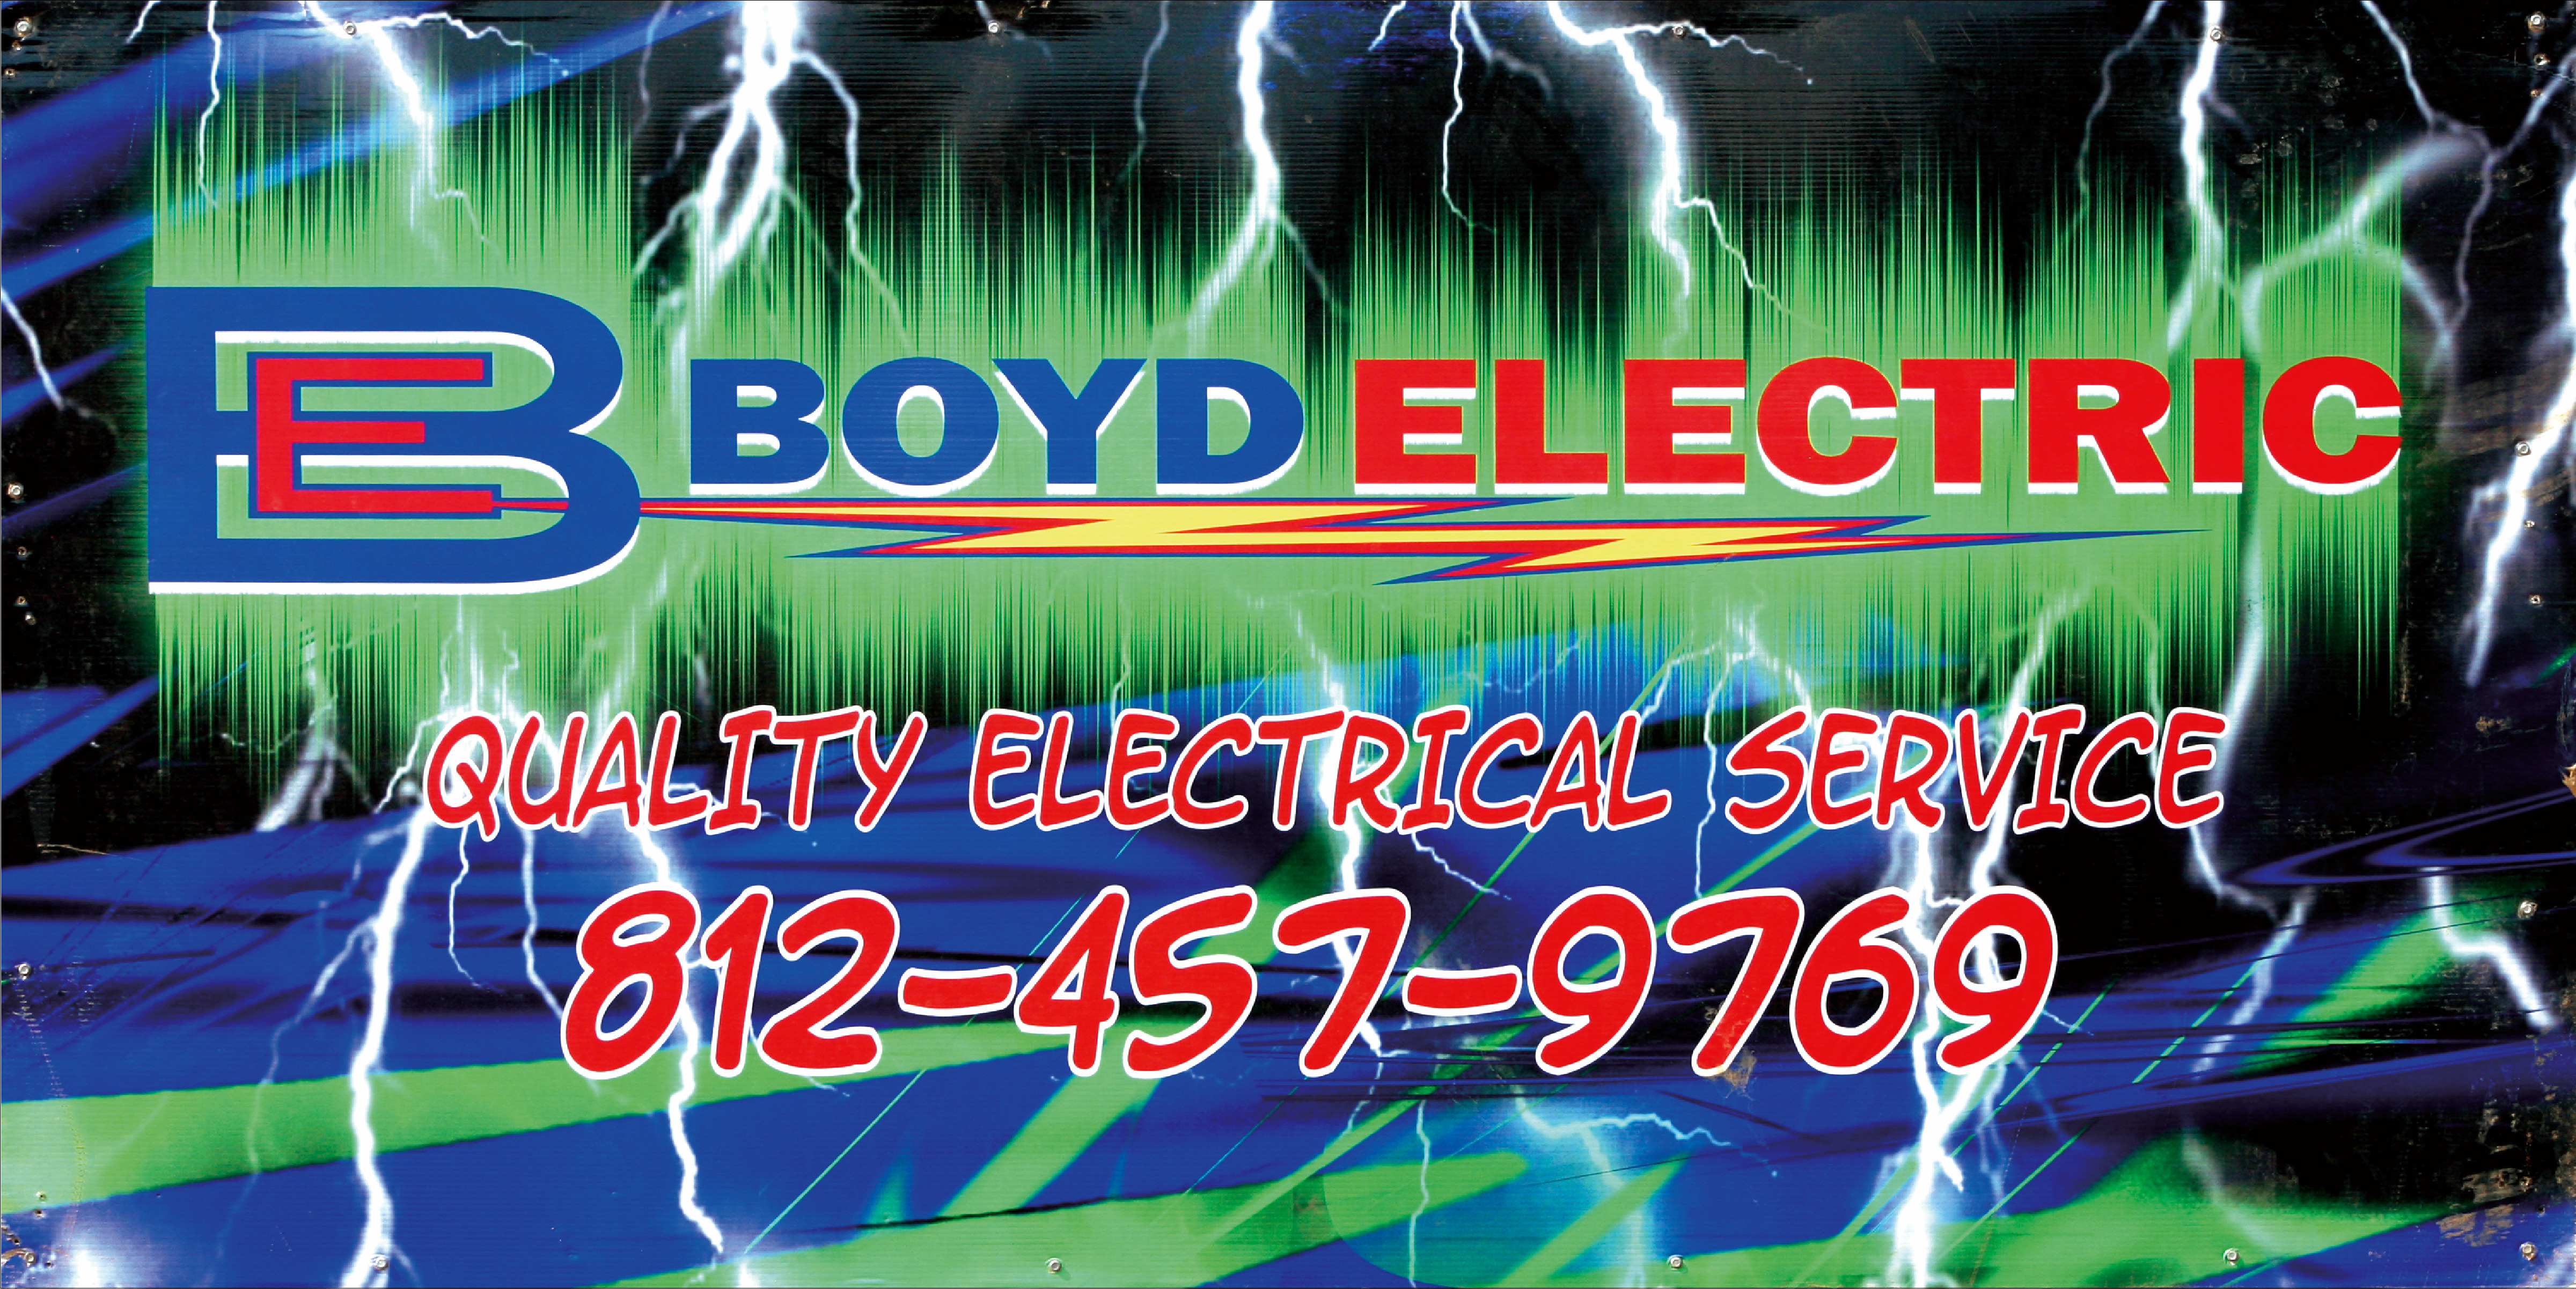 Boyd-Electric